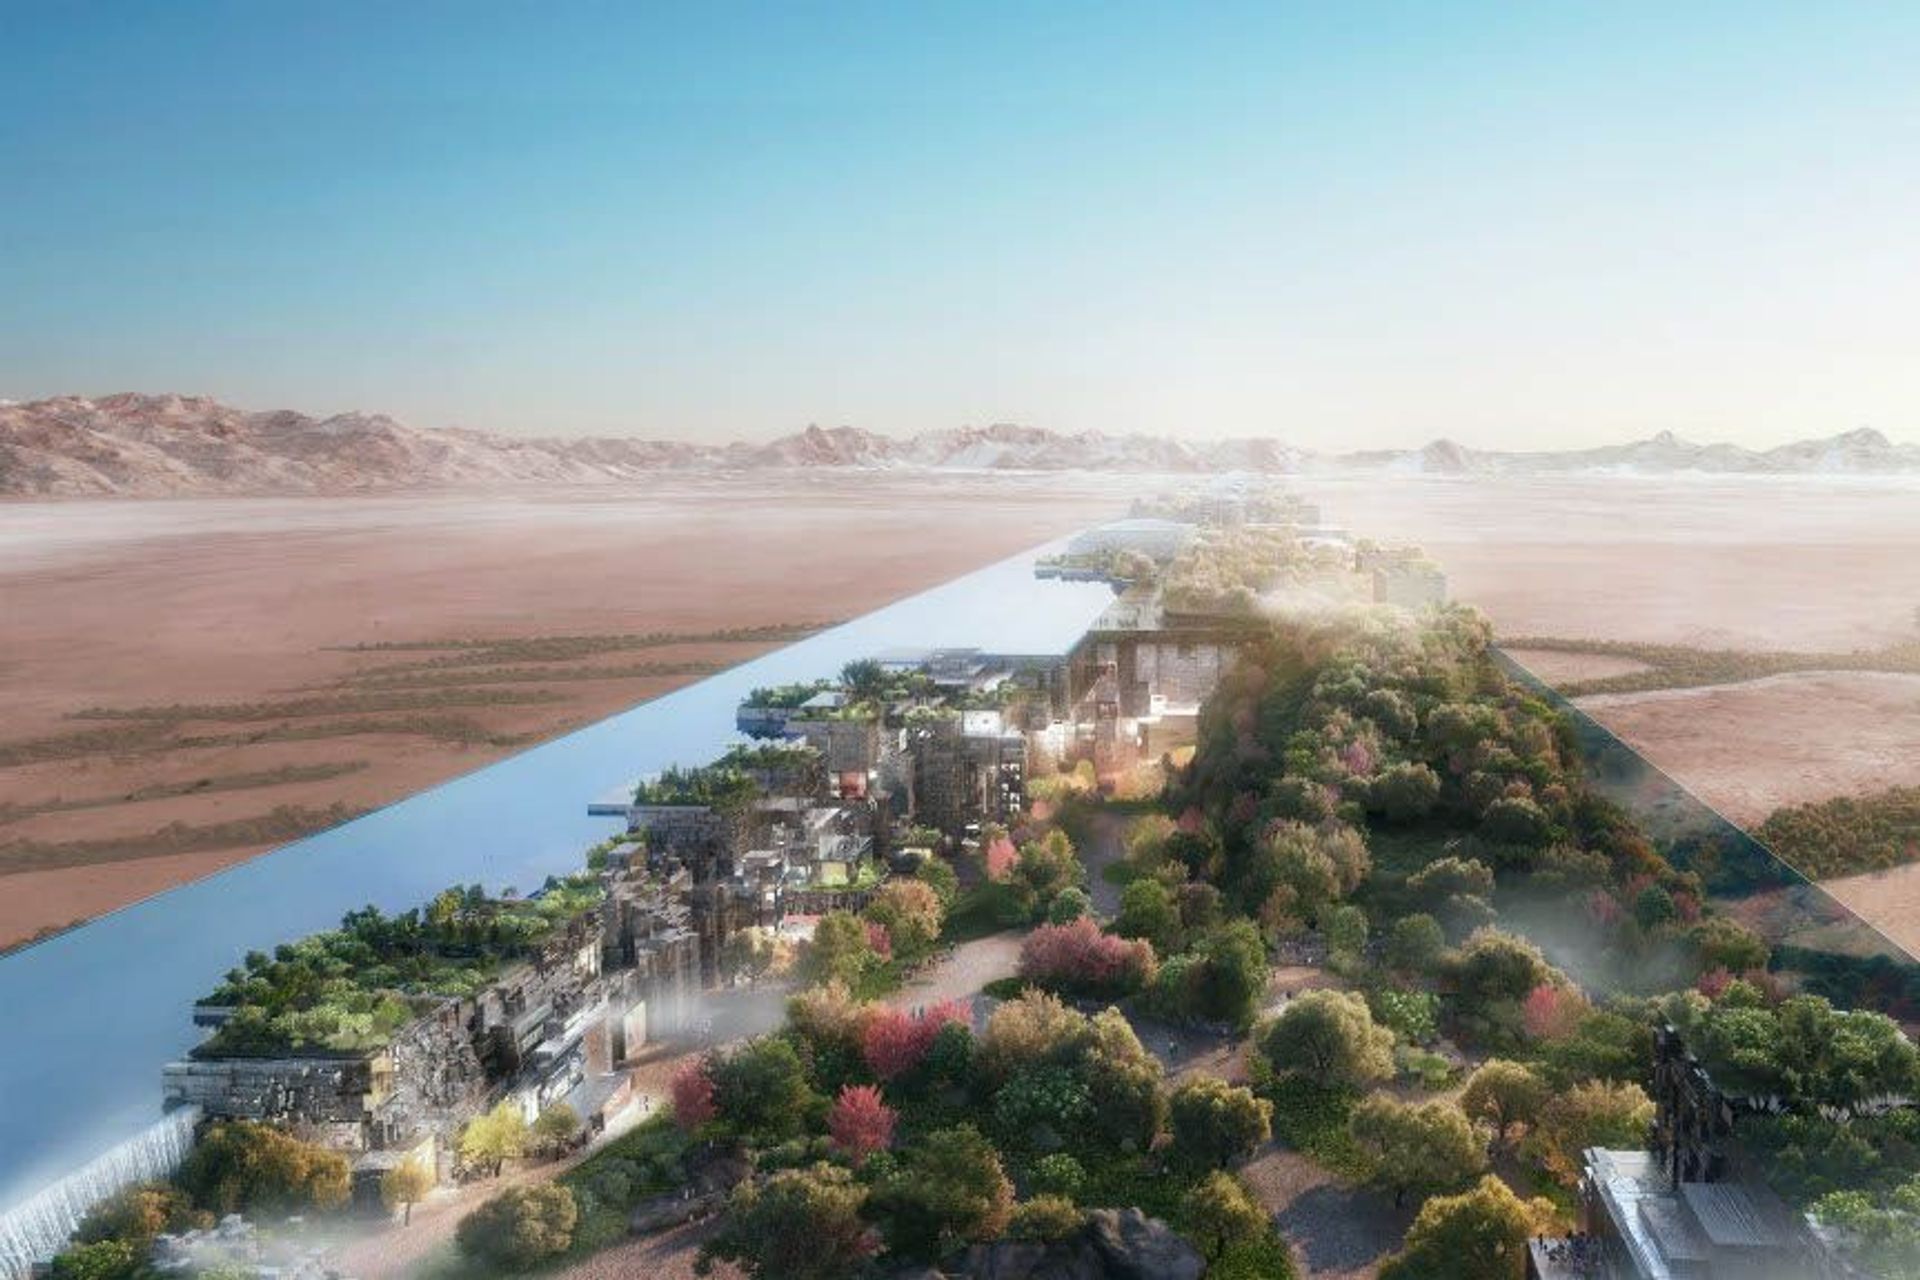 170 किमी लंबा, सऊदी अरब में "द लाइन" दुनिया का पहला रैखिक शहर होगा